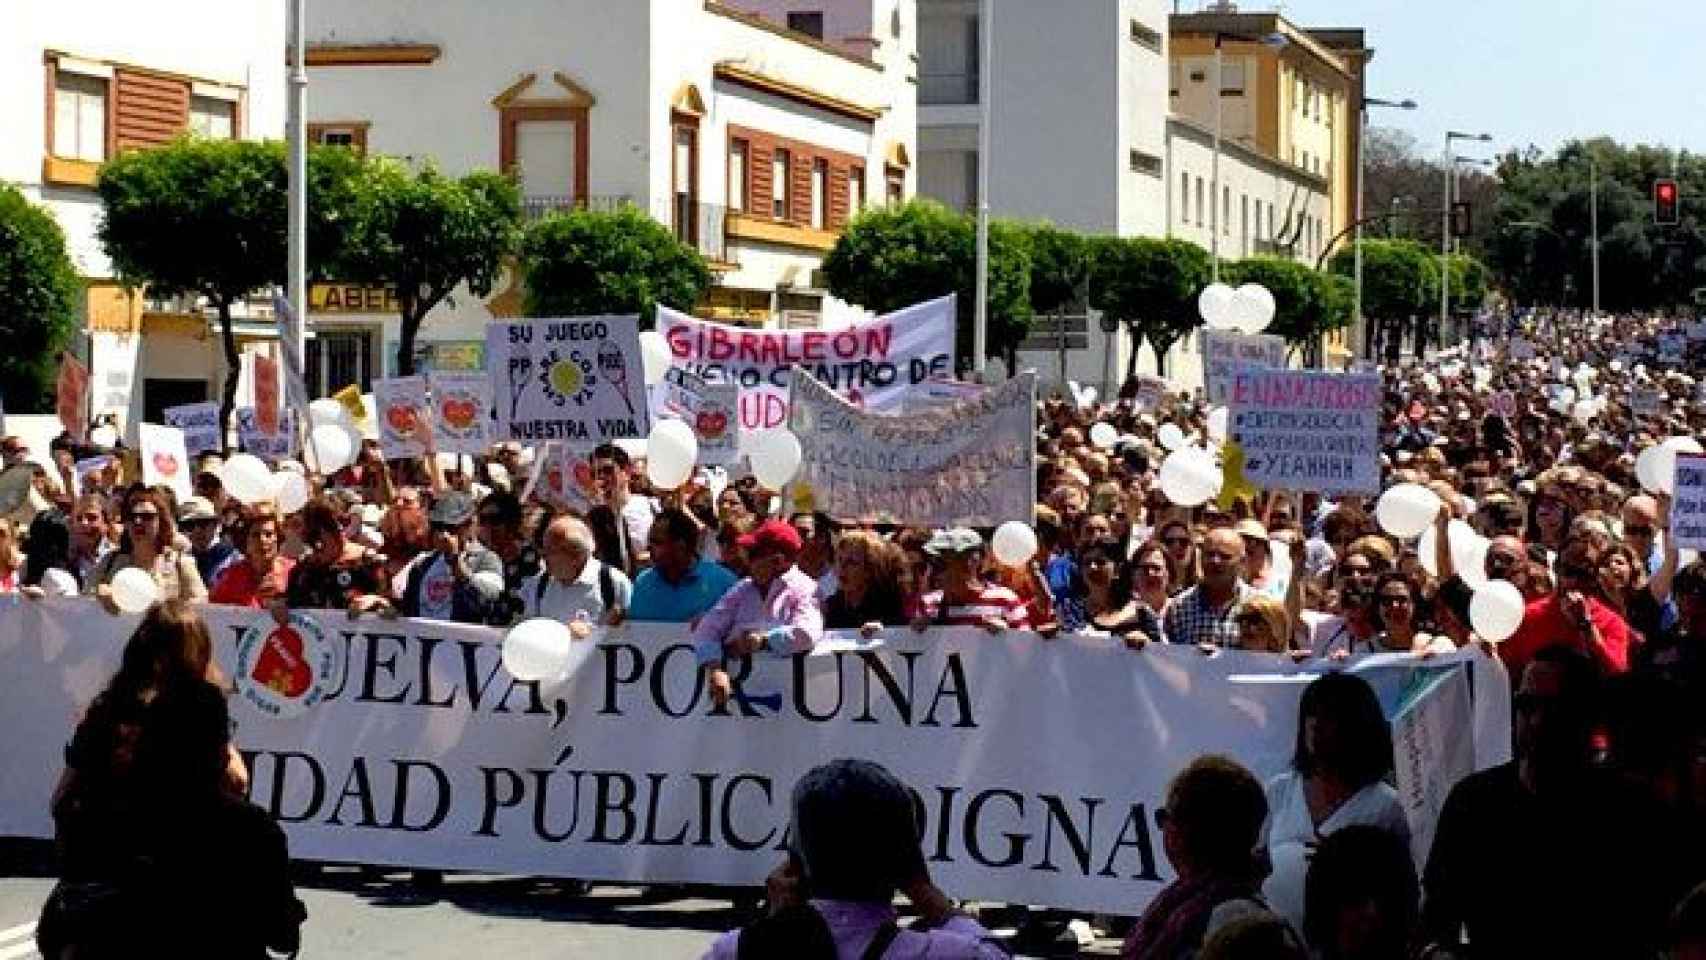 La protesta contra los recortes sanitarios en Andalucía ha reunido a 20.000 personas en Huelva / CG